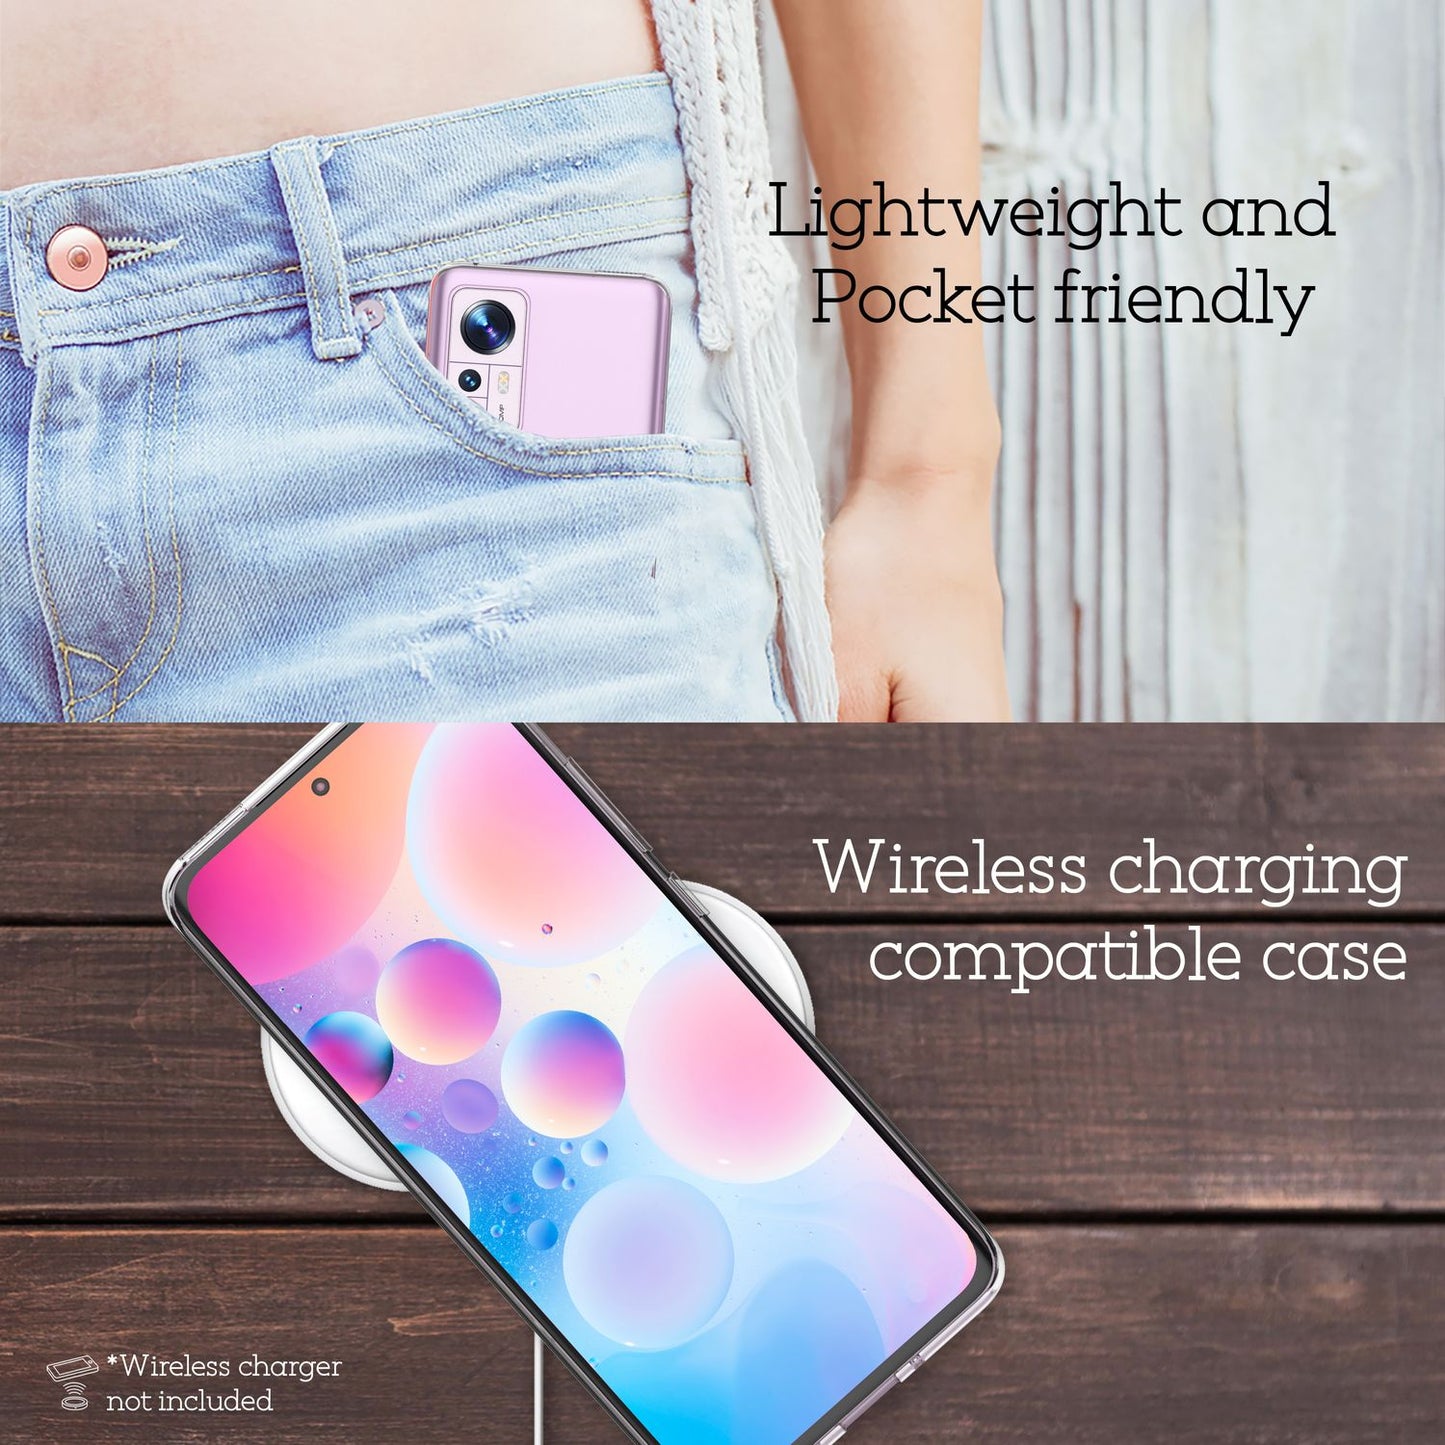 Klare Silikonhülle für Xiaomi 12/ Xiaomi 12X - Silikon Handy Hülle Case Cover